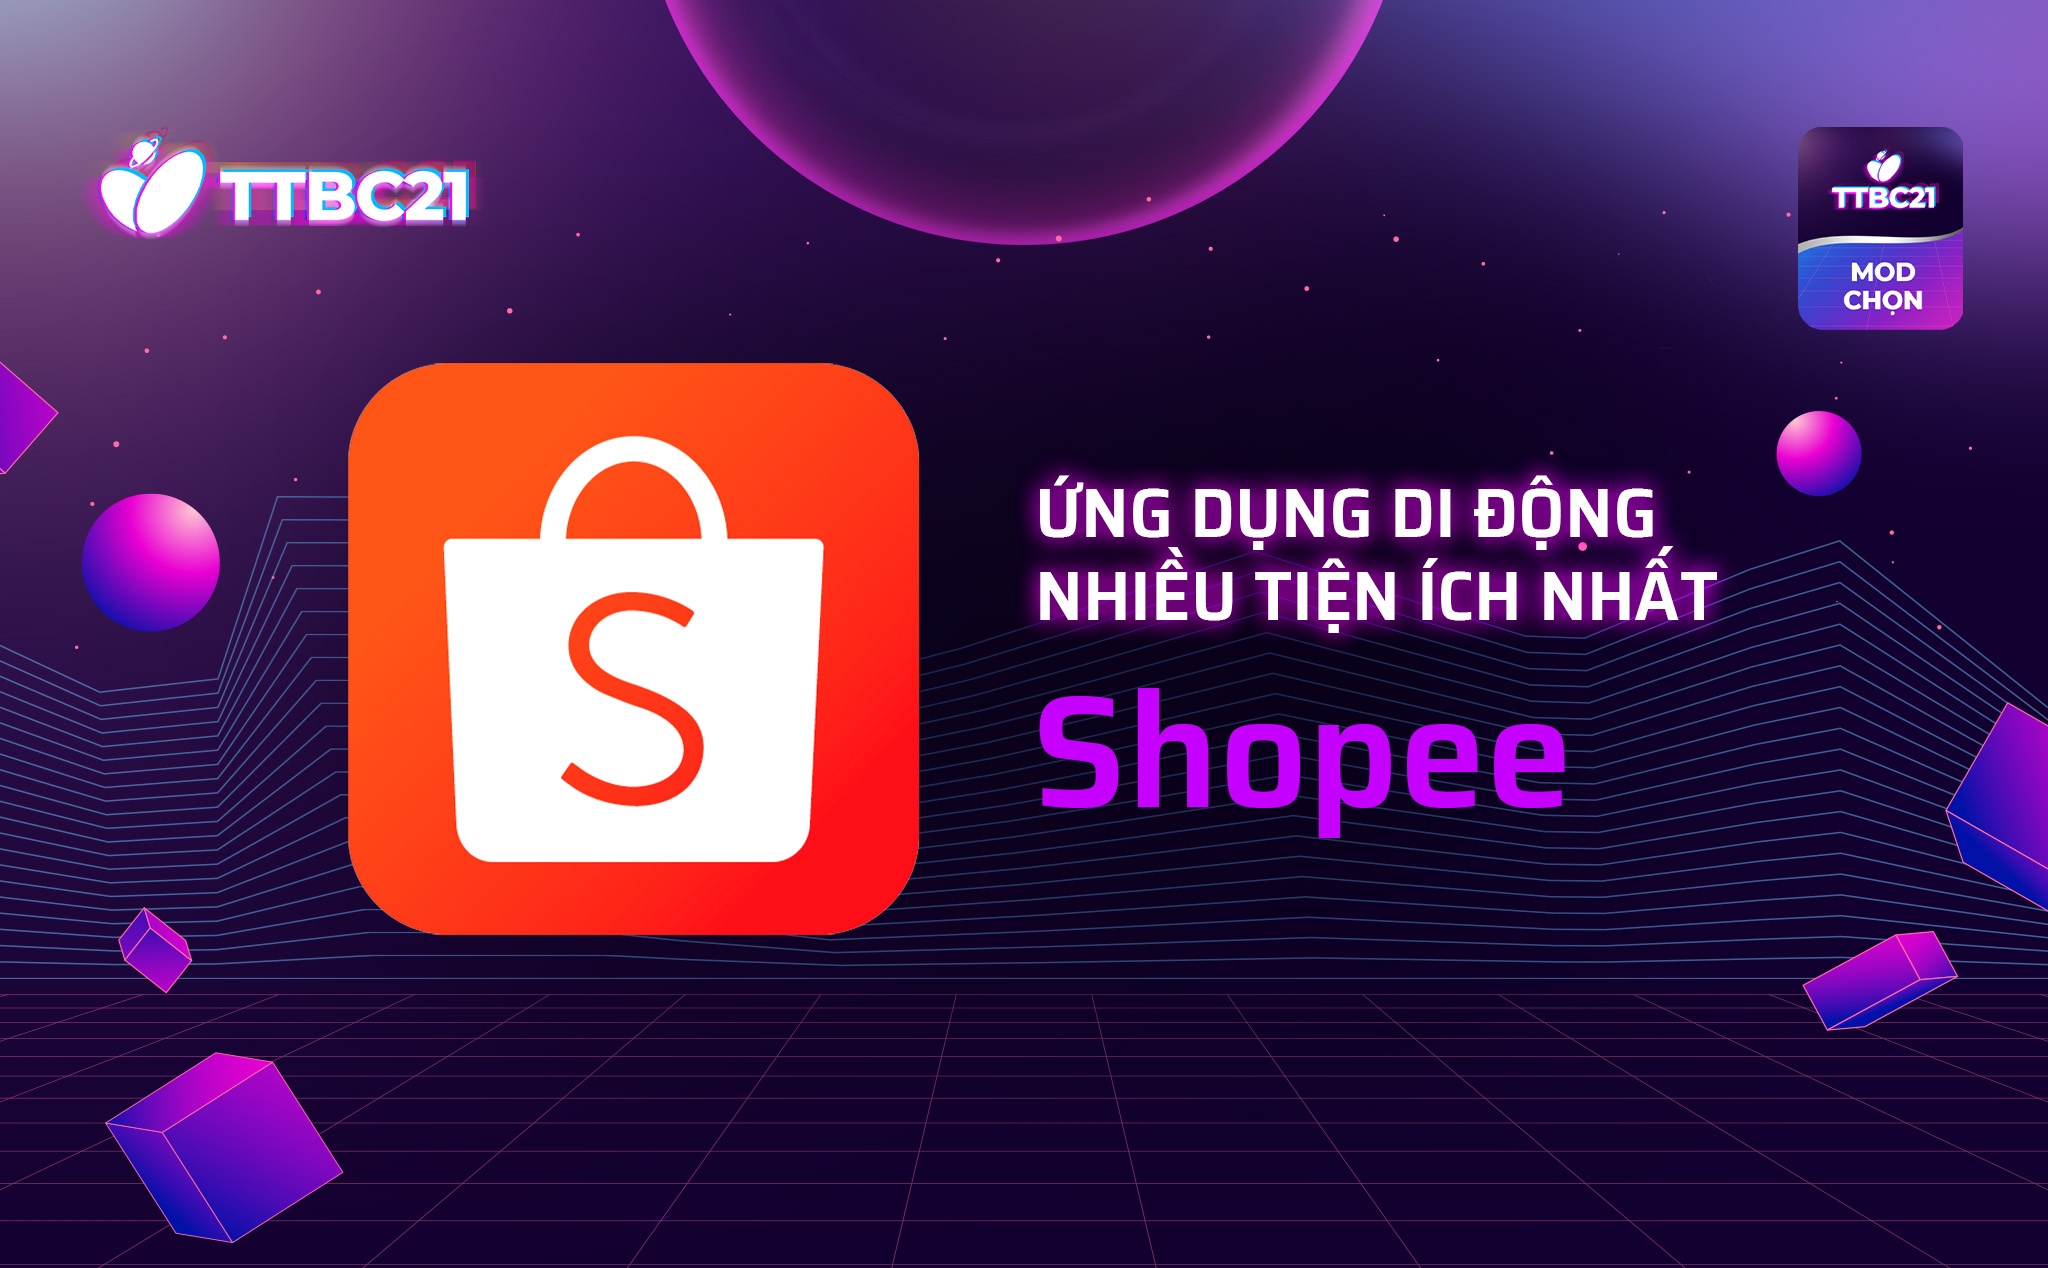 TTBC21 - Mod Choice: Shopee - Ứng dụng di động nhiều tiện ích nhất